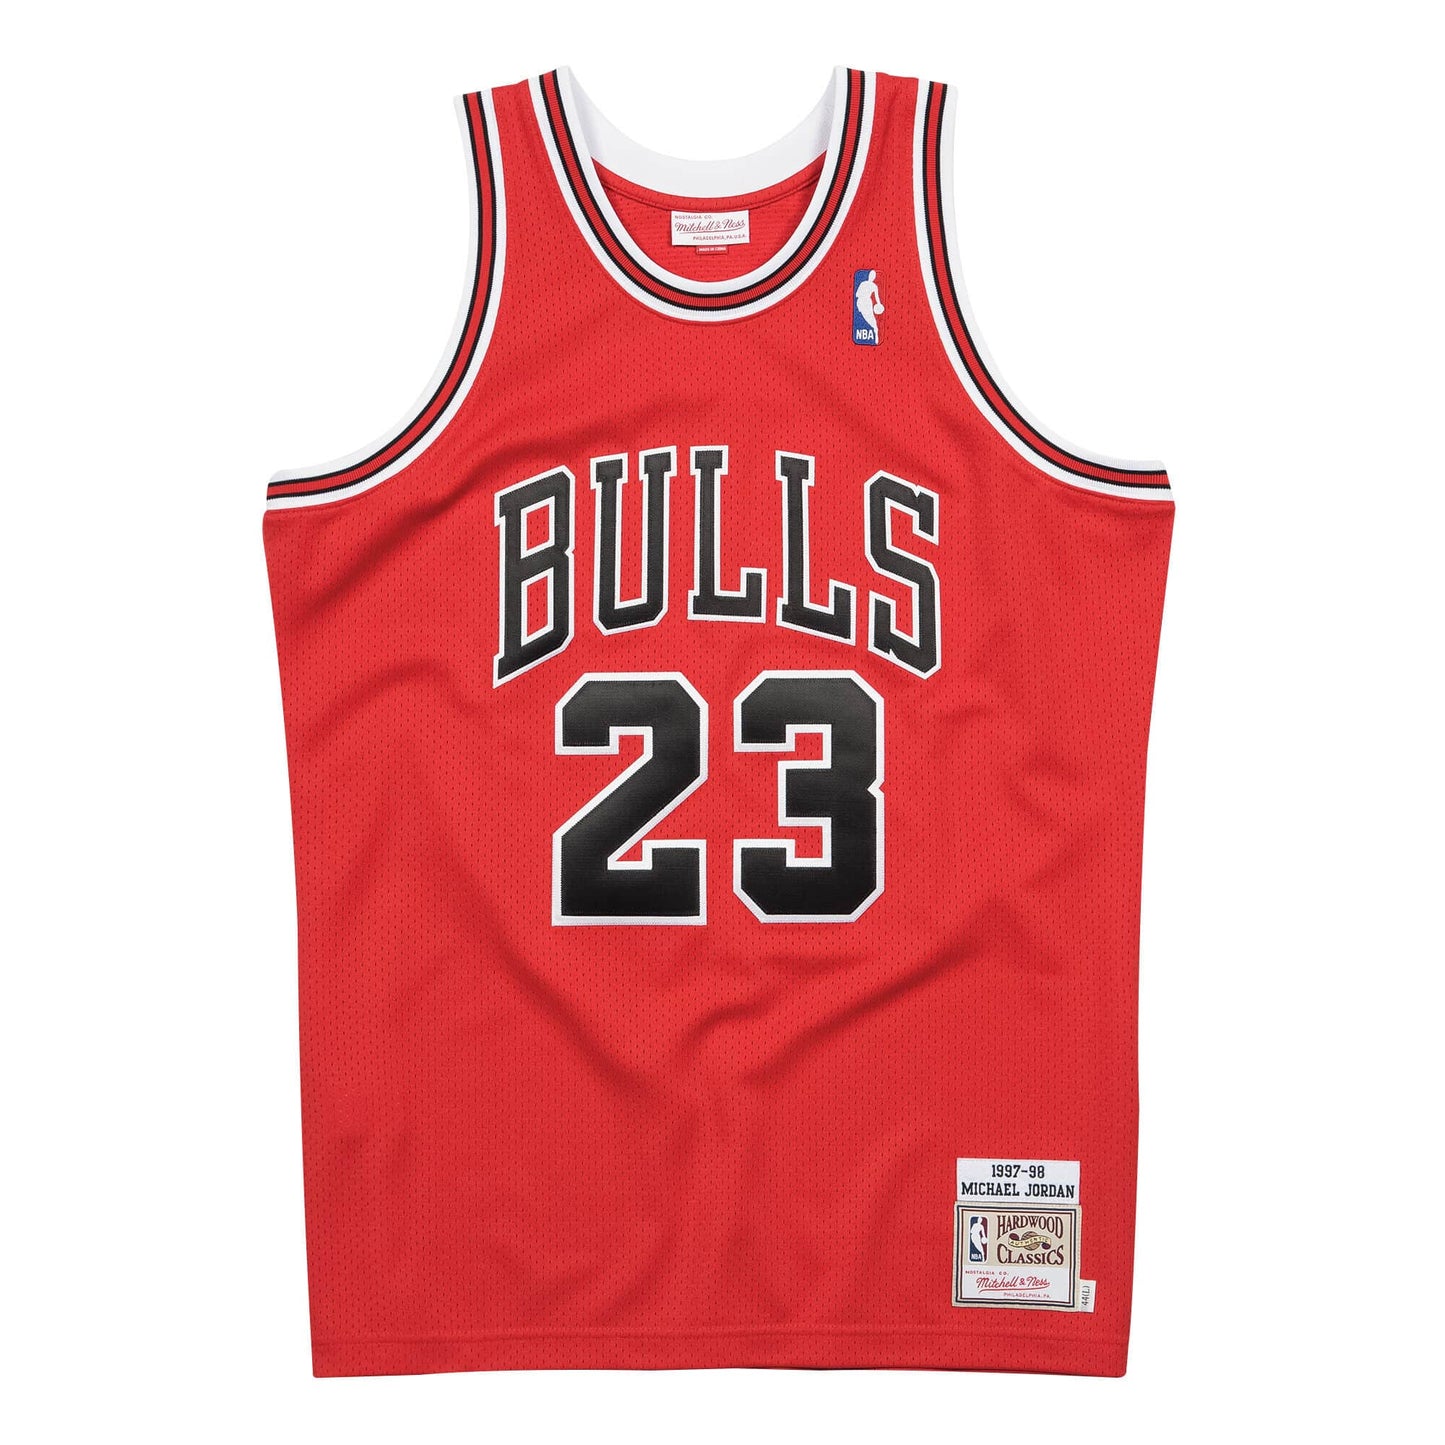 Authentic Jersey Chicago Bulls 1997-98 Michael Jordans